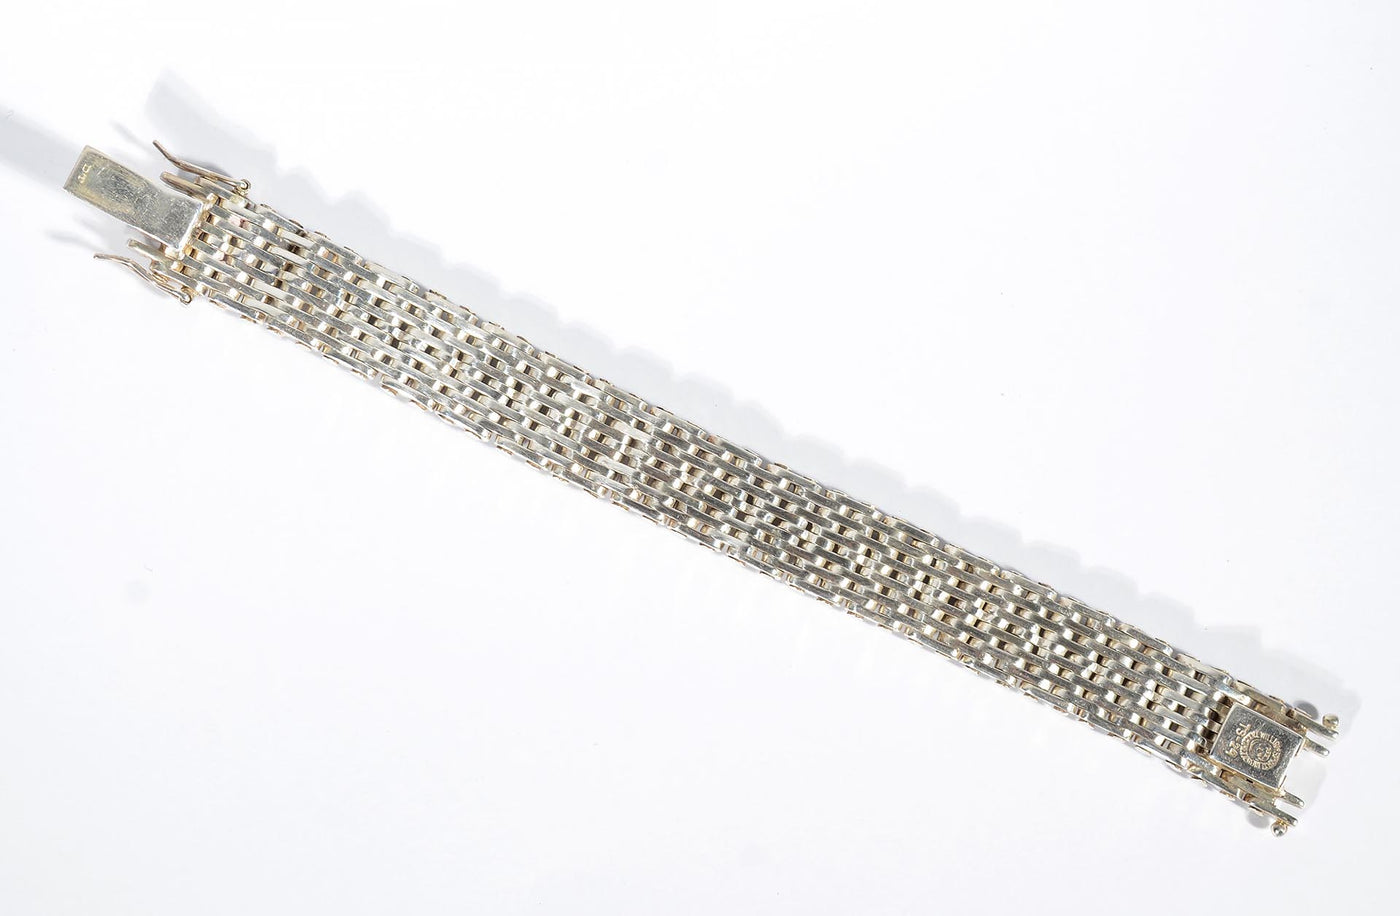 william-spratling-sterling-silver-industrial-design-bracelet-1449107-3-outside